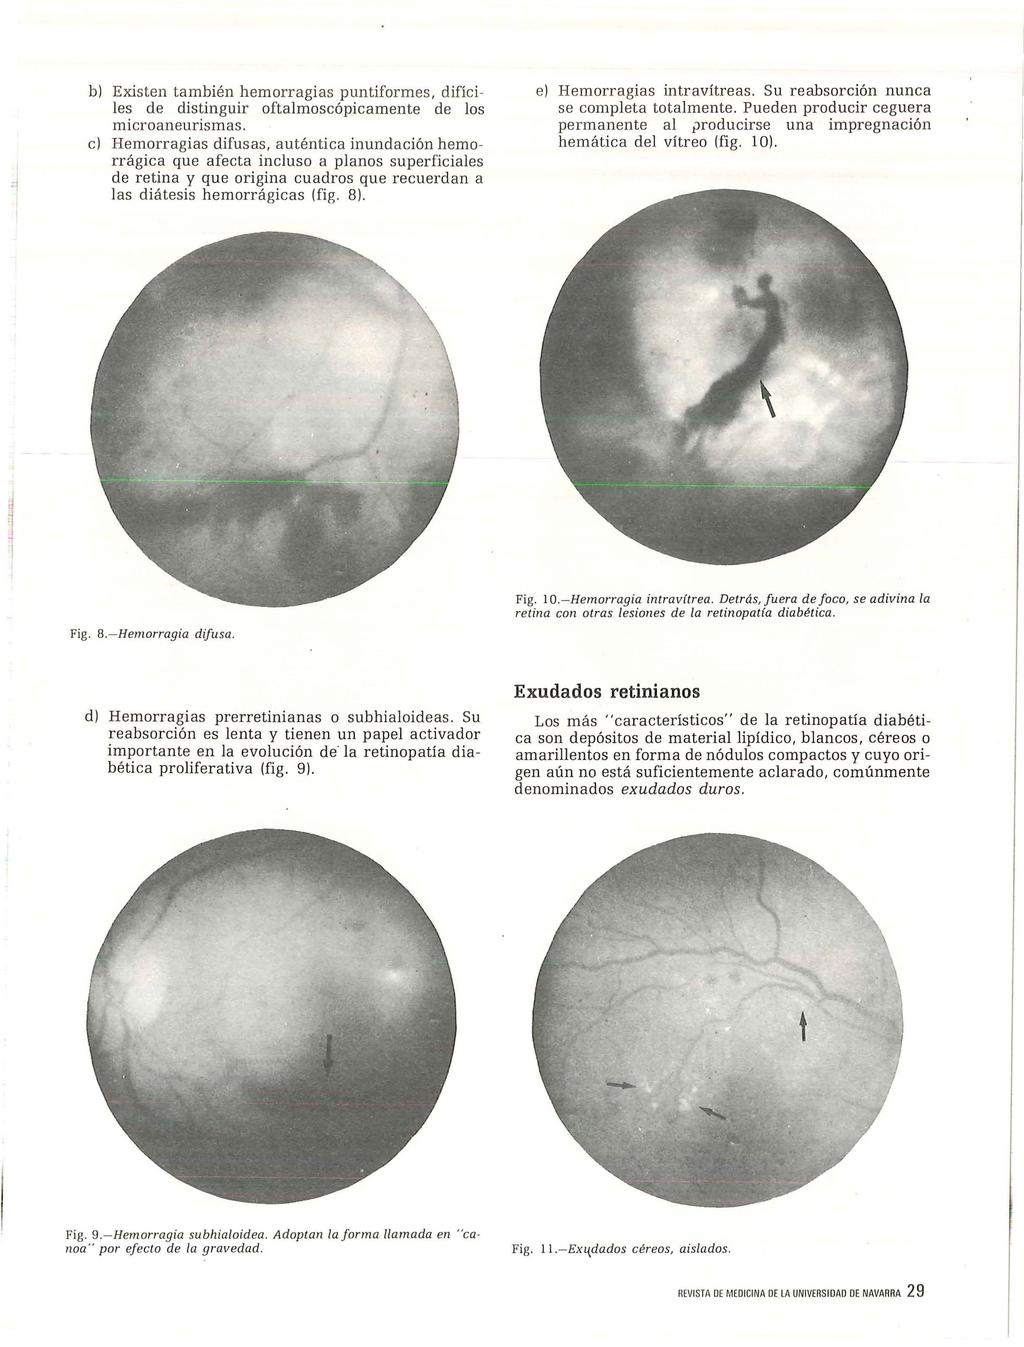 b) Existen también hemorragias puntiformes, difíciles de distinguir oftalmoscópicamente de los microaneurismas.